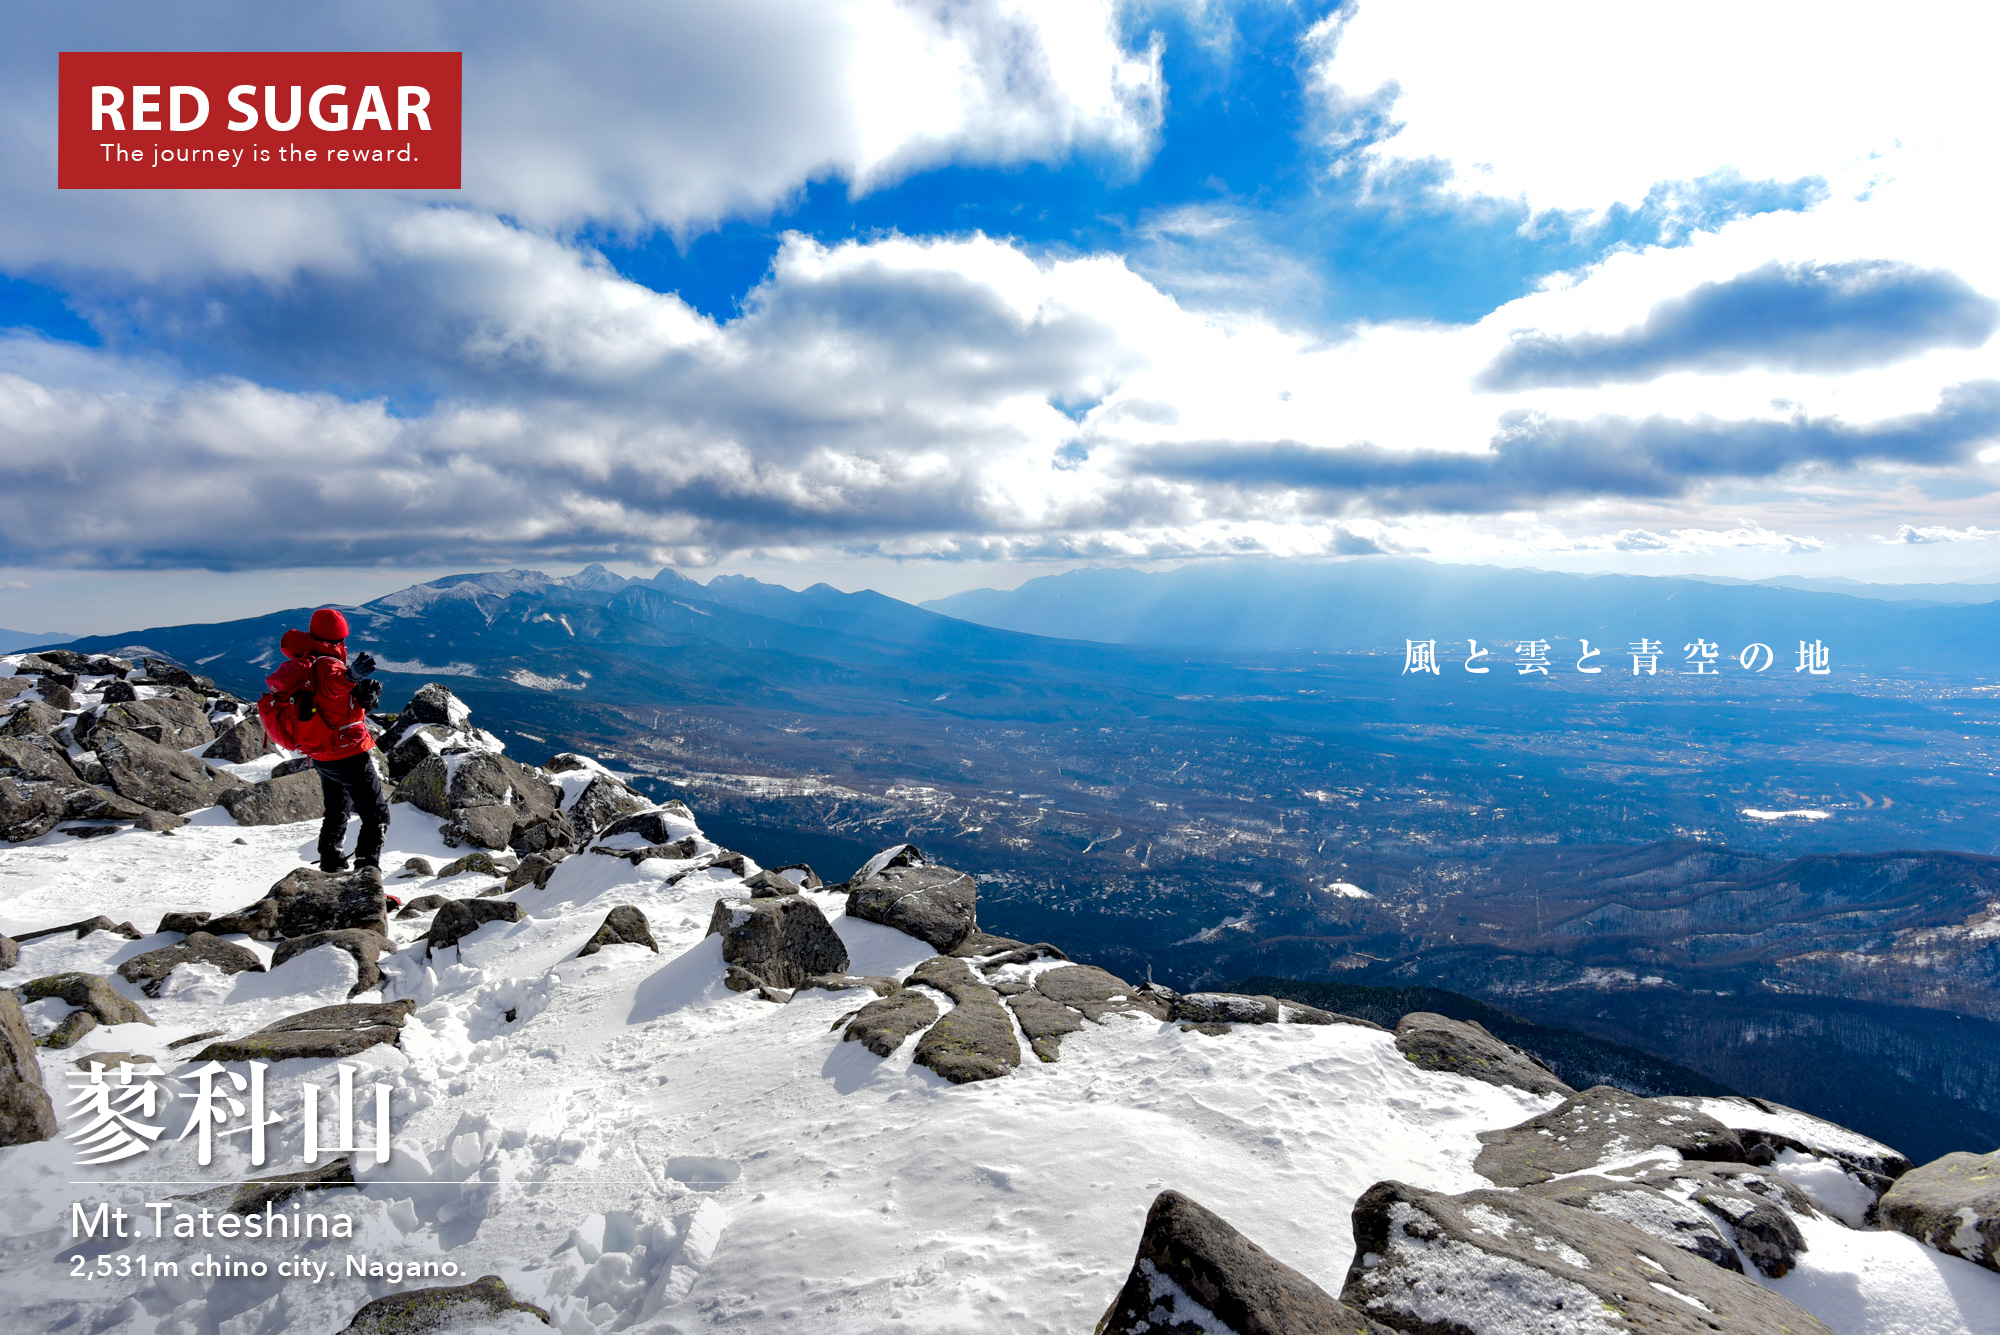 八ヶ岳 蓼科山 北八ヶ岳に構える女の神山 雪景色の写真撮影登山 Red Sugar